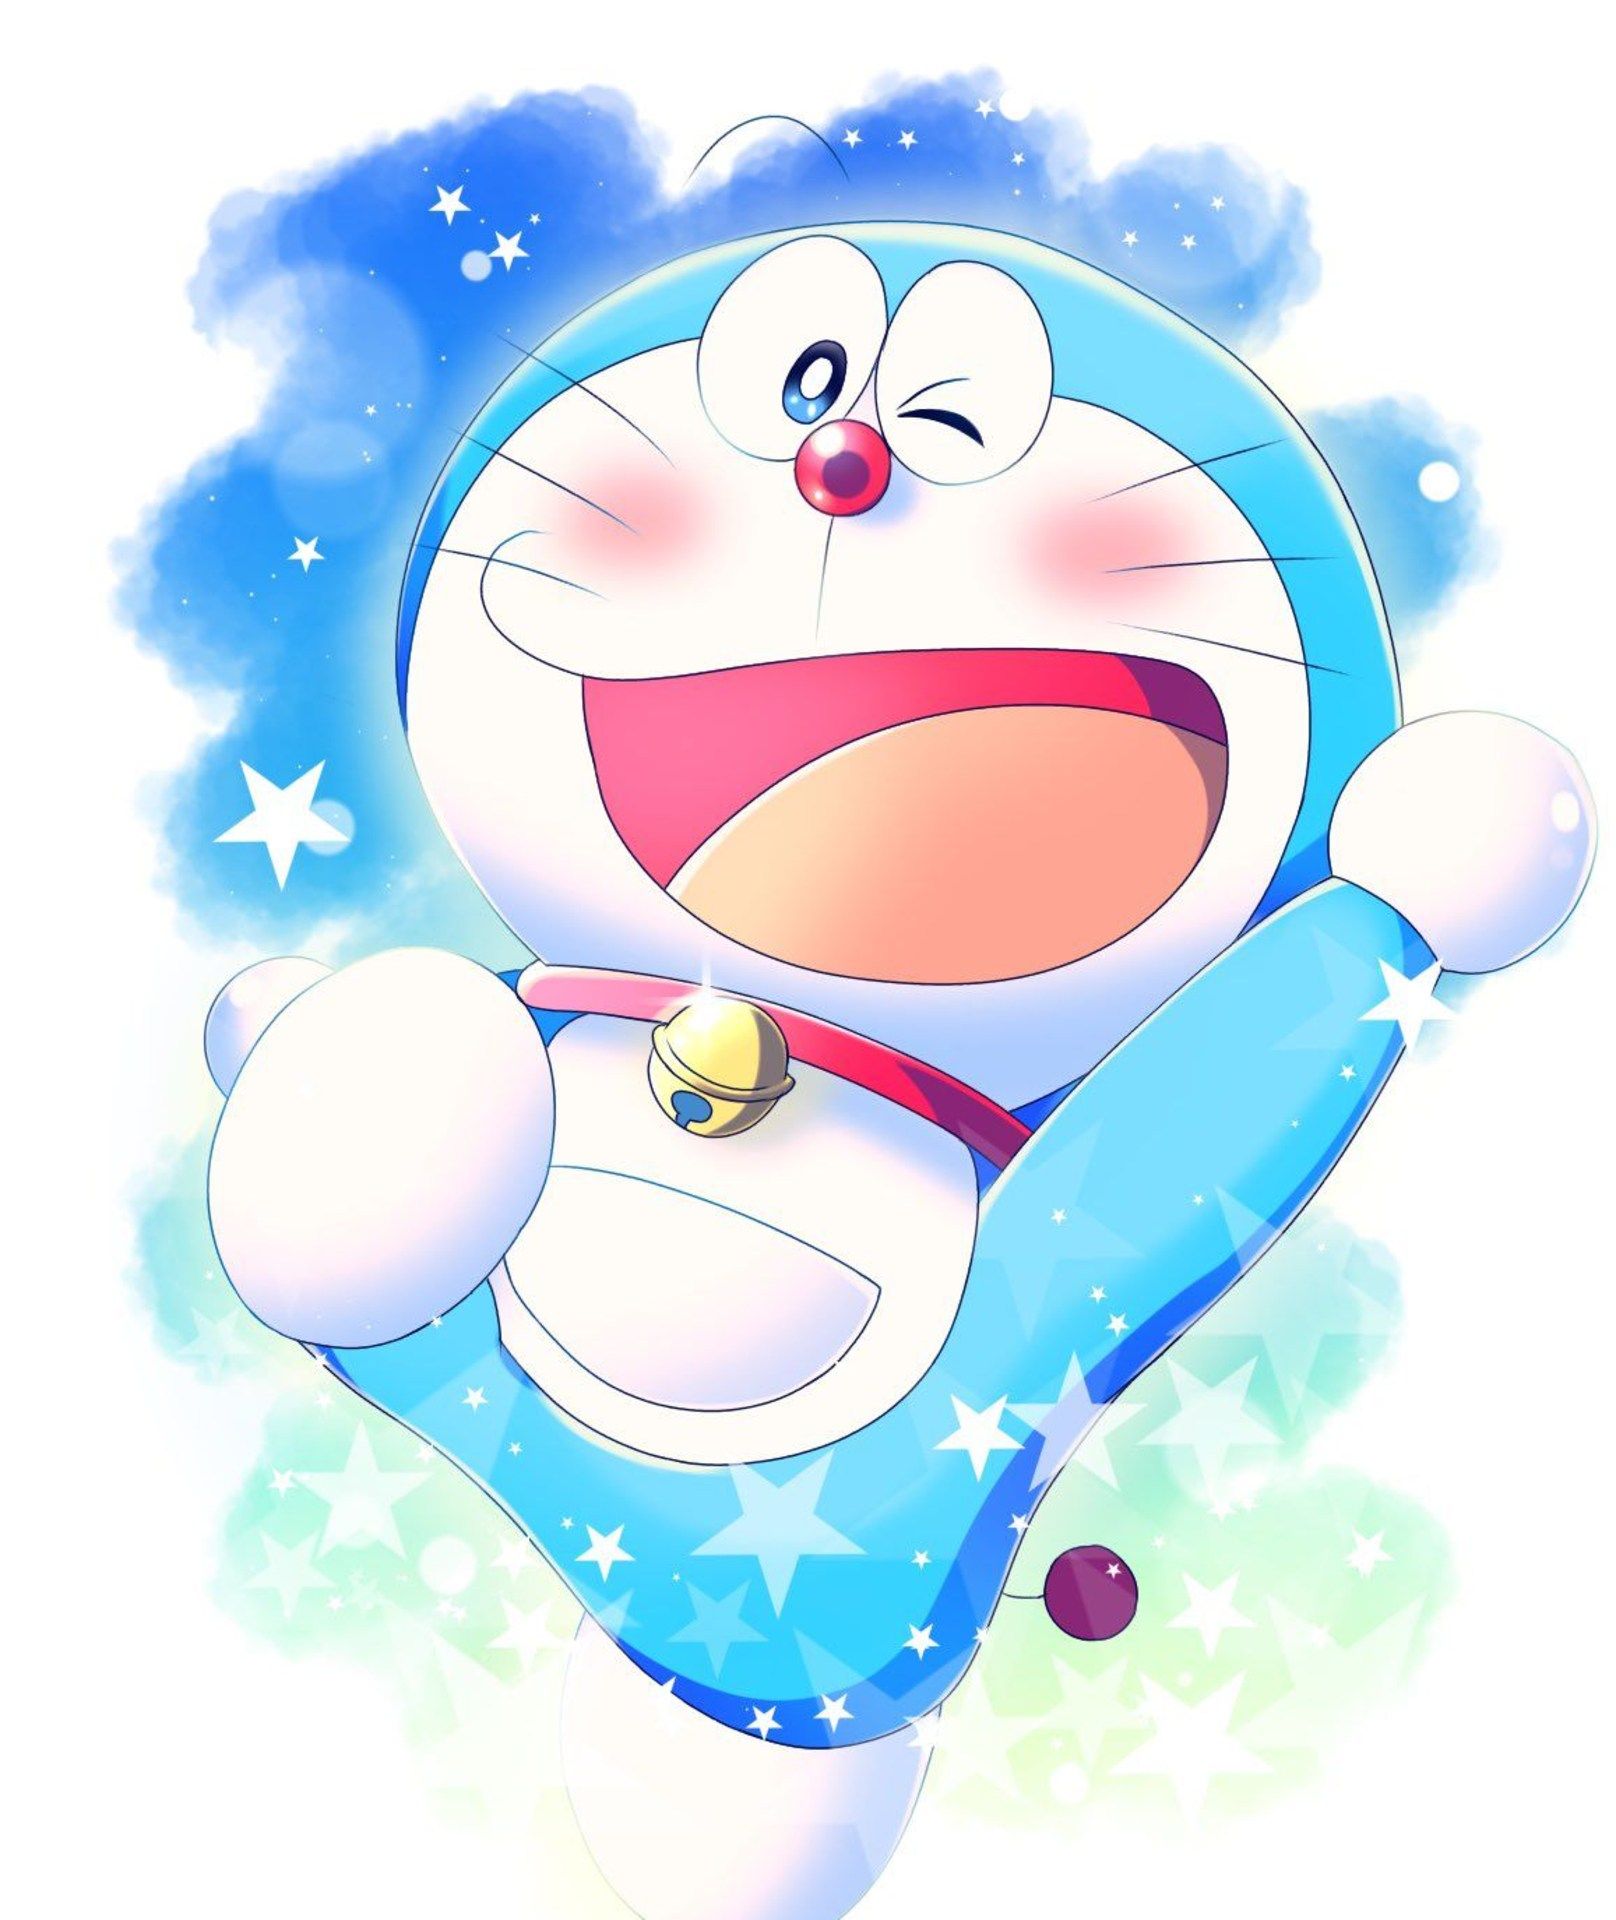 Hình ảnh avatar Doremon đáng yêu 2024: Những hình ảnh avatar Doremon đáng yêu mới nhất sẽ mang đến cho bạn cảm giác ấm áp và vui vẻ. Với những tấm ảnh được chọn lọc kỹ càng và phù hợp với xu hướng thịnh hành, bạn sẽ thấy Doraemon trở nên đặc biệt hơn bao giờ hết. Vậy nếu bạn đang muốn tìm kiếm một tấm ảnh đáng yêu để làm avatar, hãy xem ngay những hình ảnh avatar Doremon đáng yêu 2024!